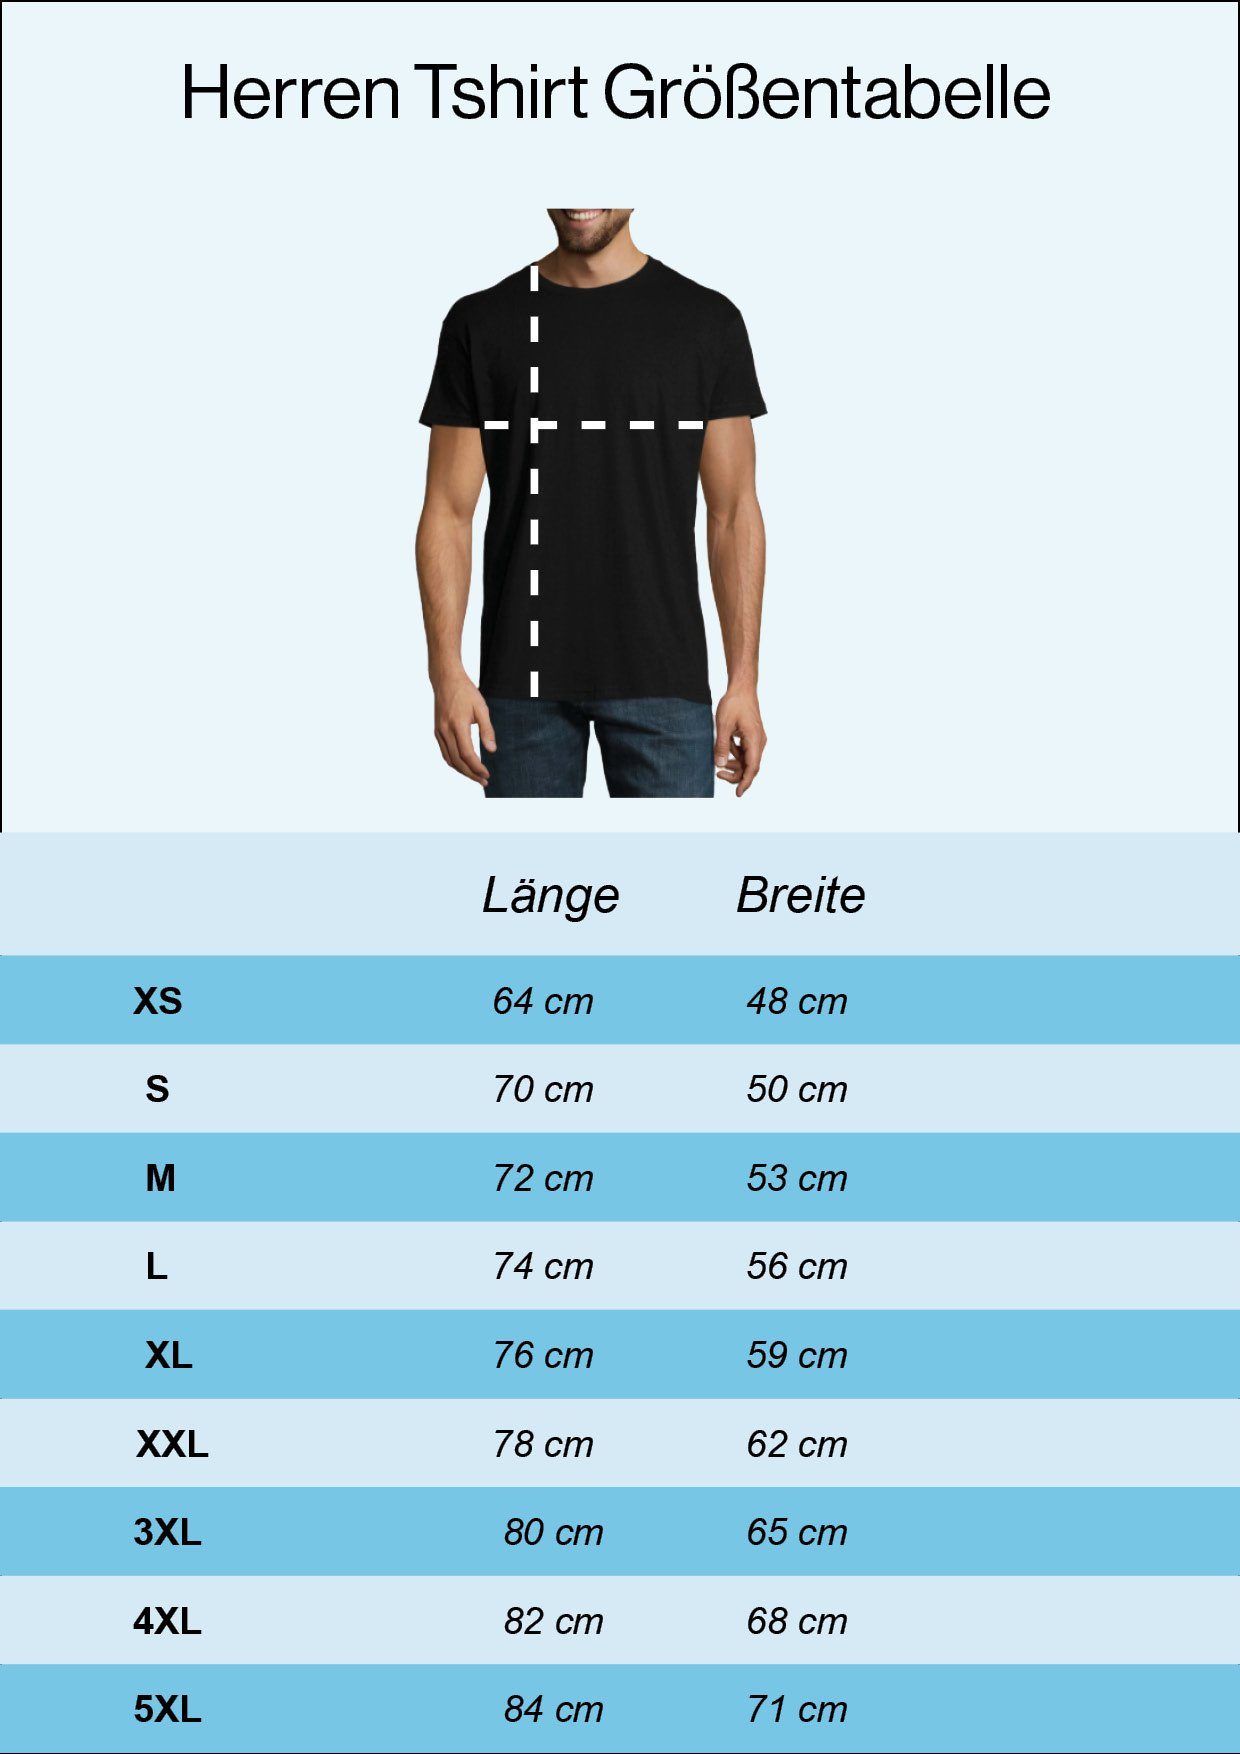 DAD Youth T-Shirt Herren Designz Mode im Loading Burgund Shirt Fun-Look